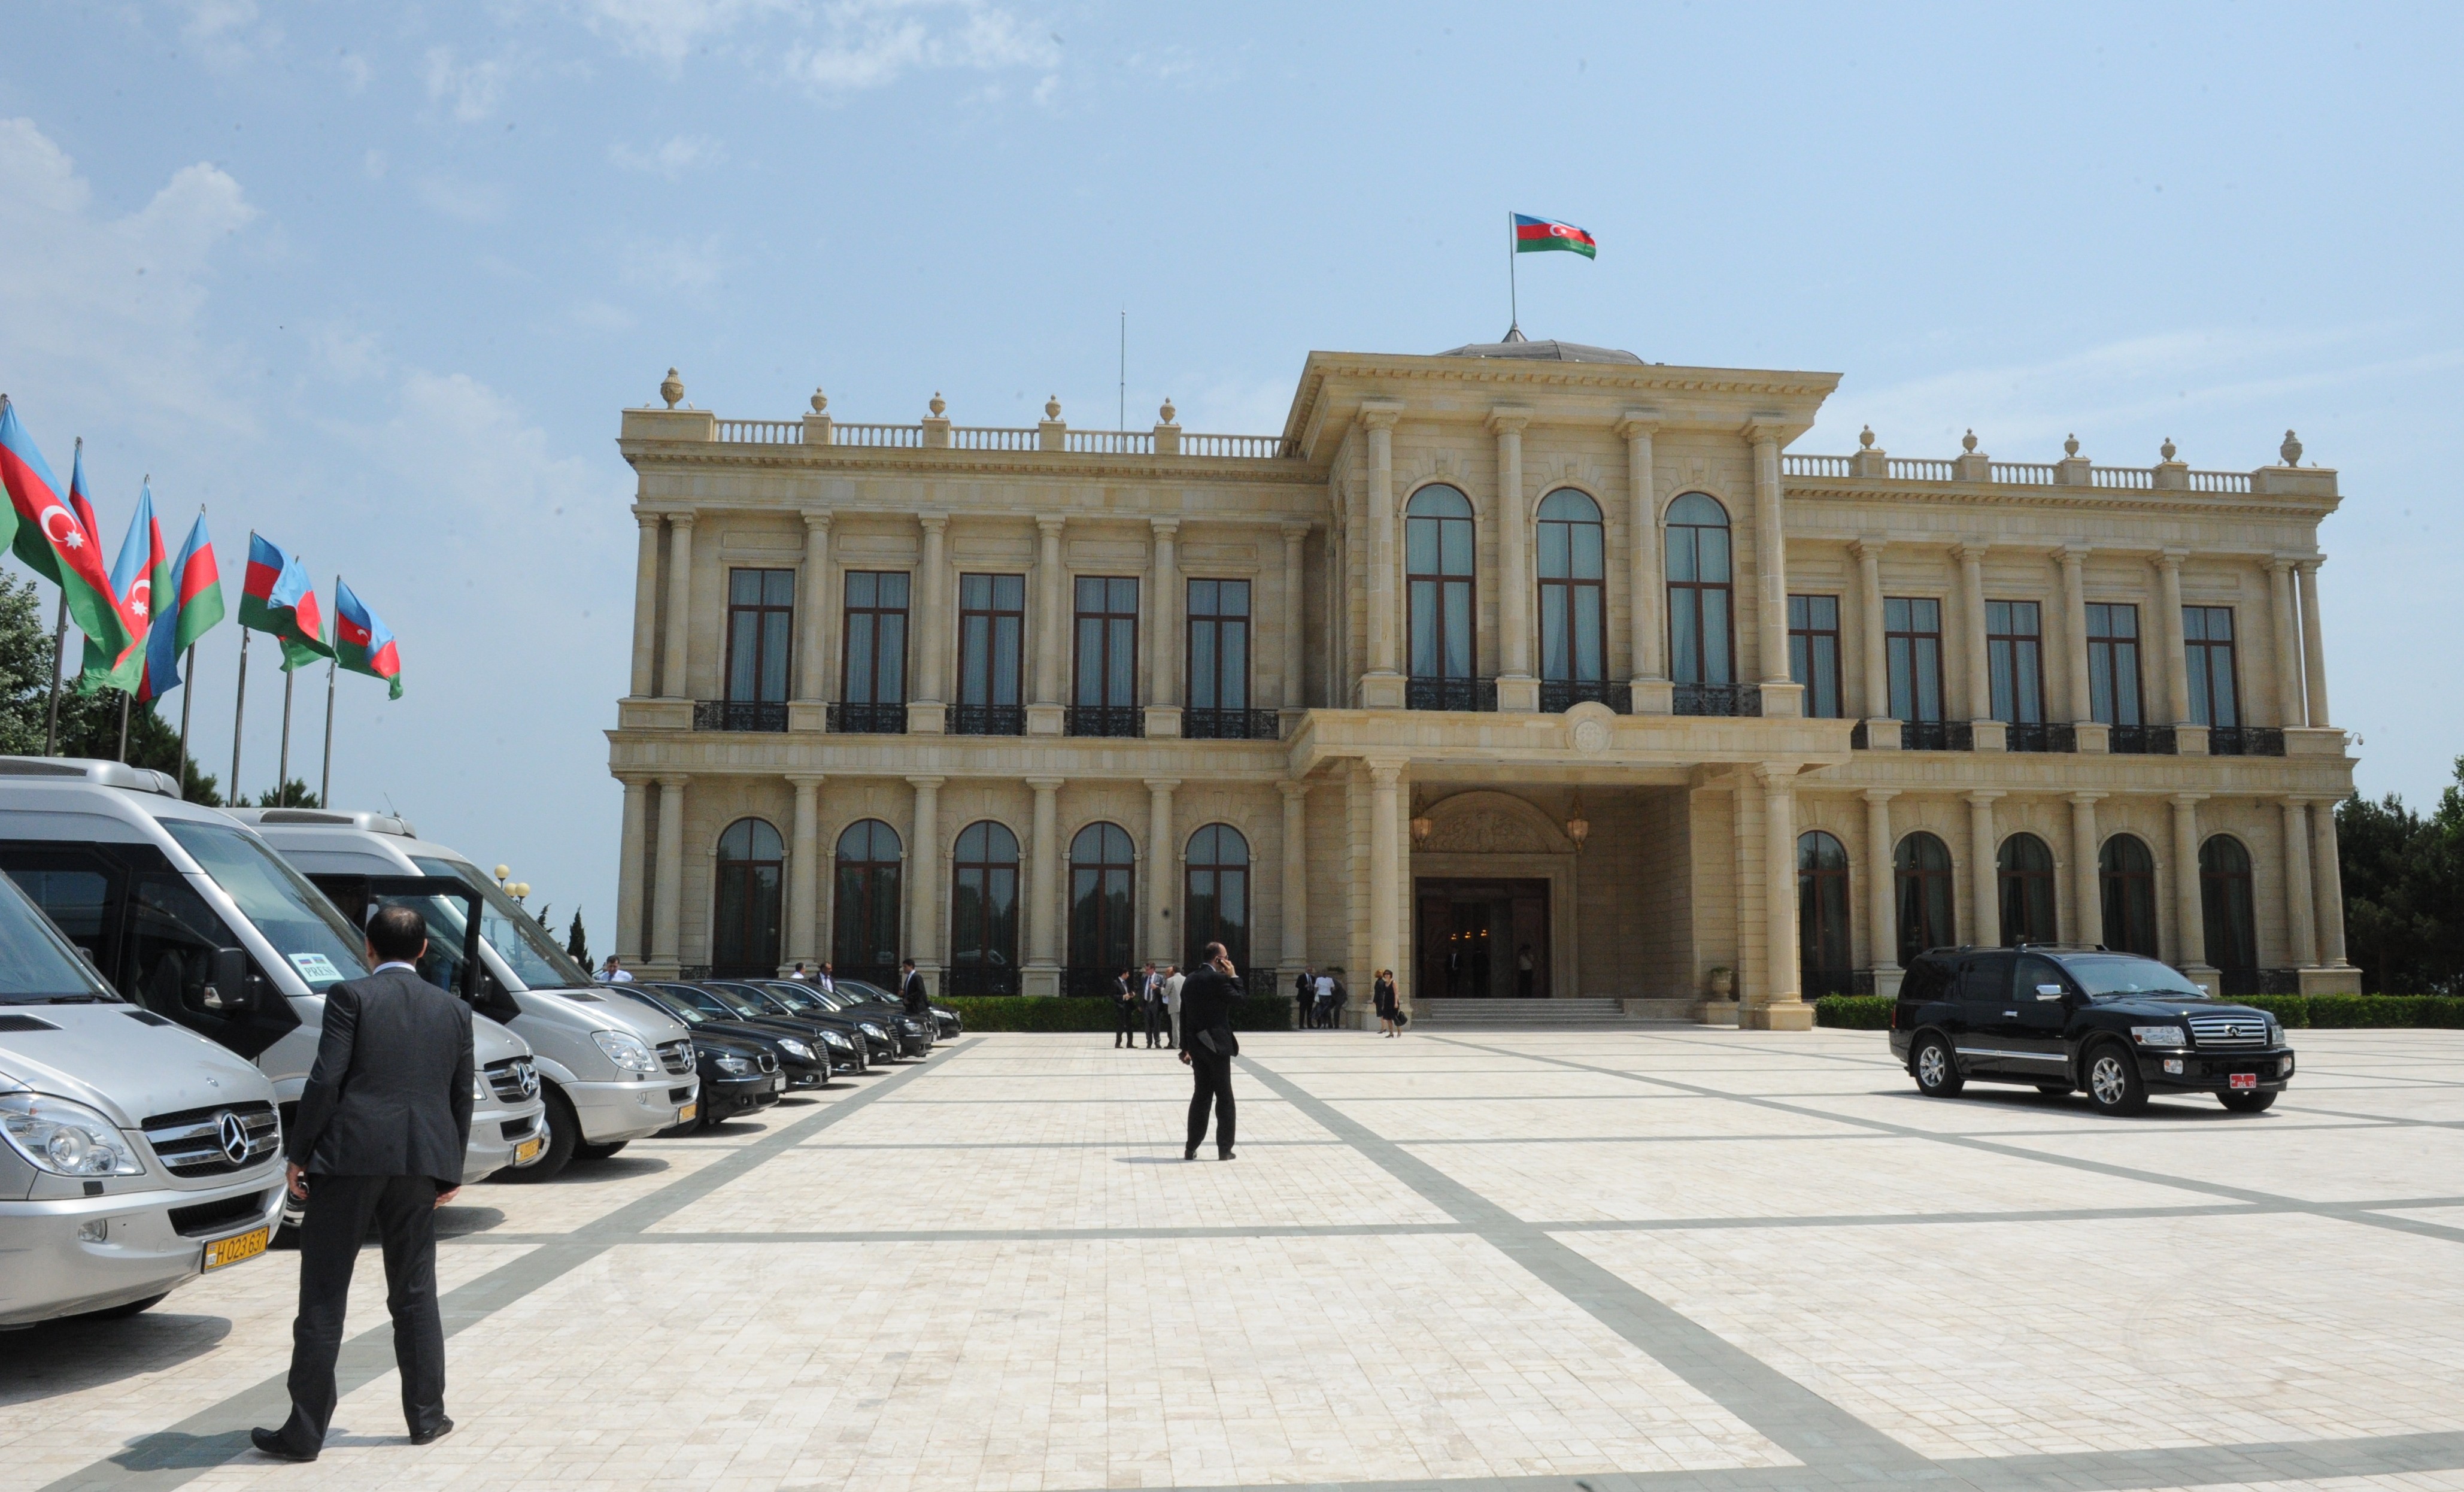 Президентская резиденции "Загульба" в Баку.&nbsp;
Фото:&nbsp;&copy;&nbsp;РИА Новости/Владимир Федоренко&nbsp;&nbsp;